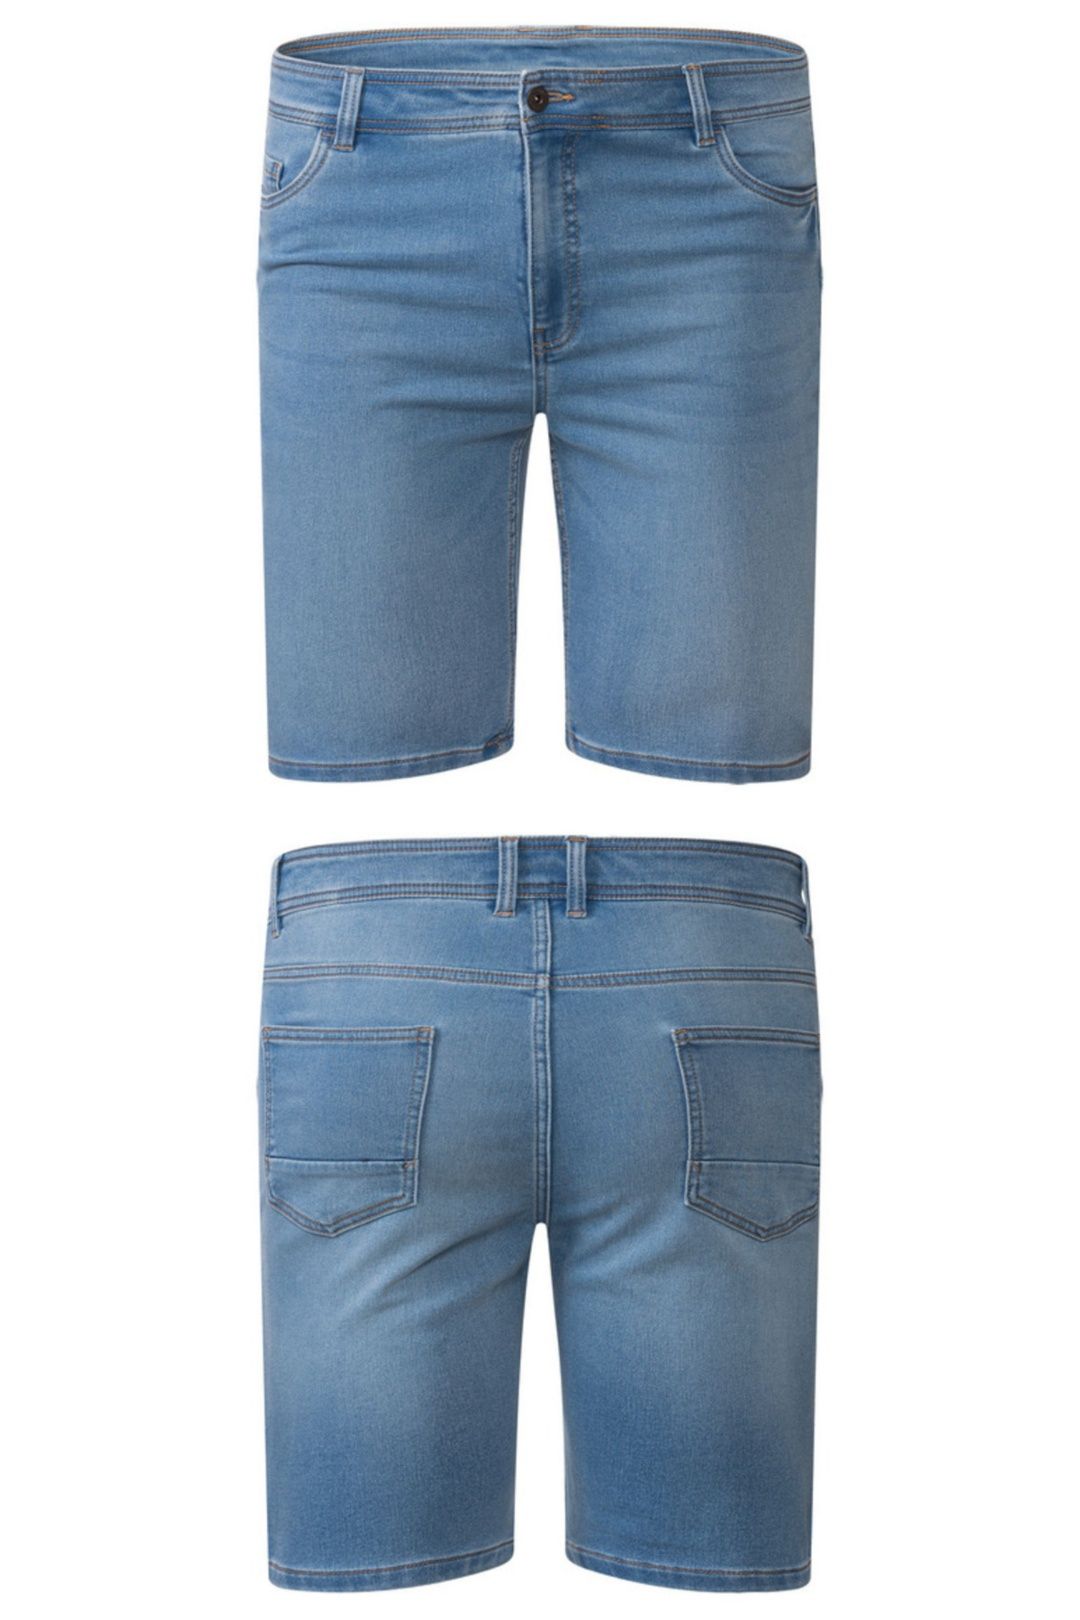 БАТАЛ нові Livergy джинсові шорти для чоловіка